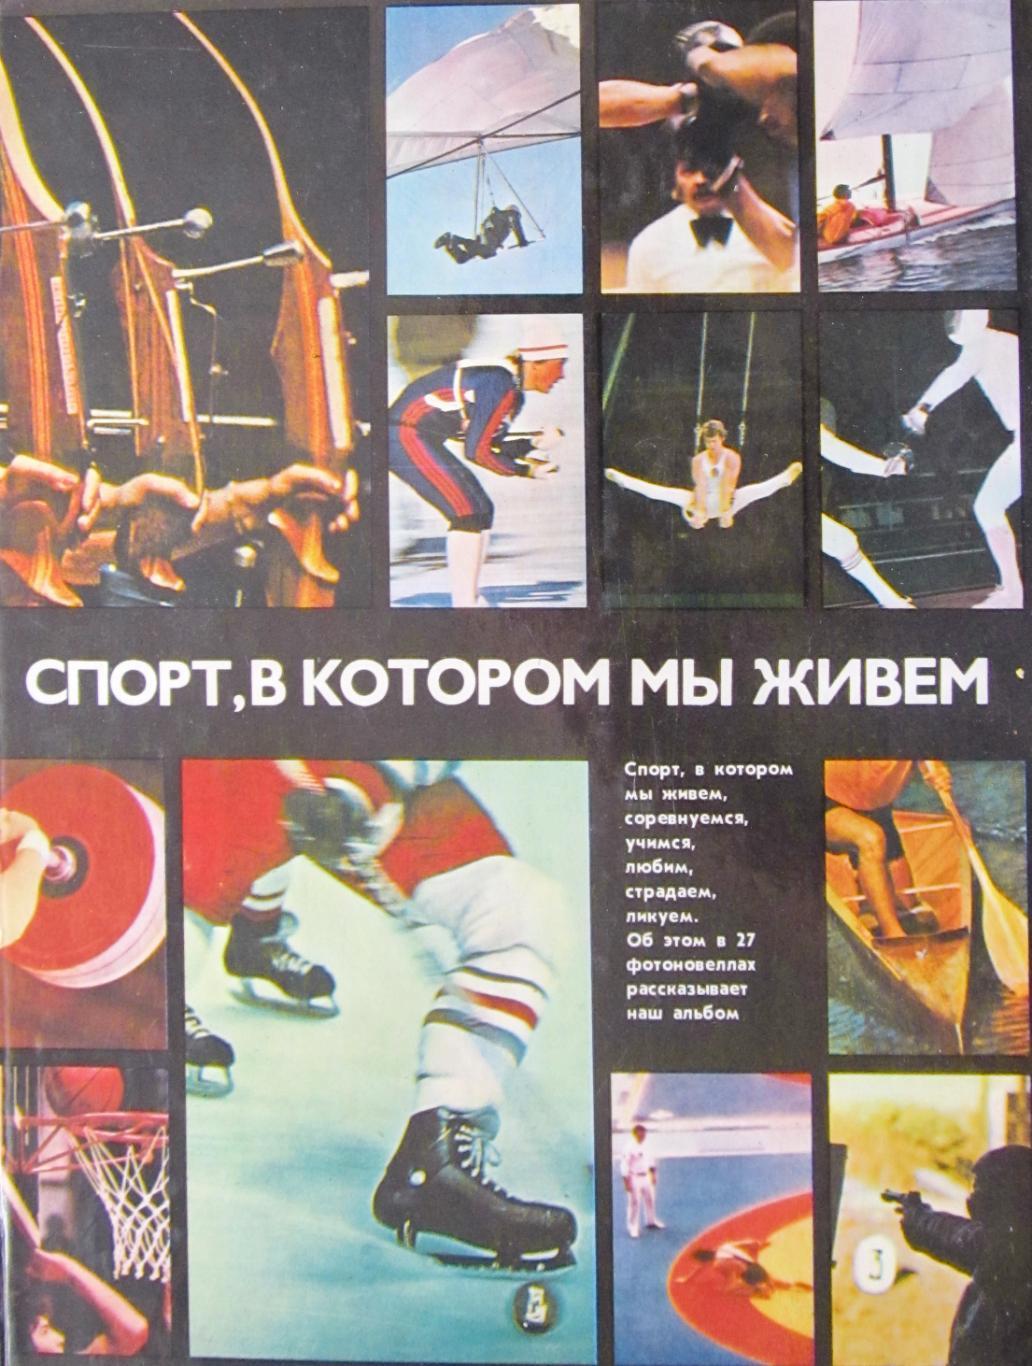 Спорт, в котором мы живем. Фотоальбом о советском спорте.